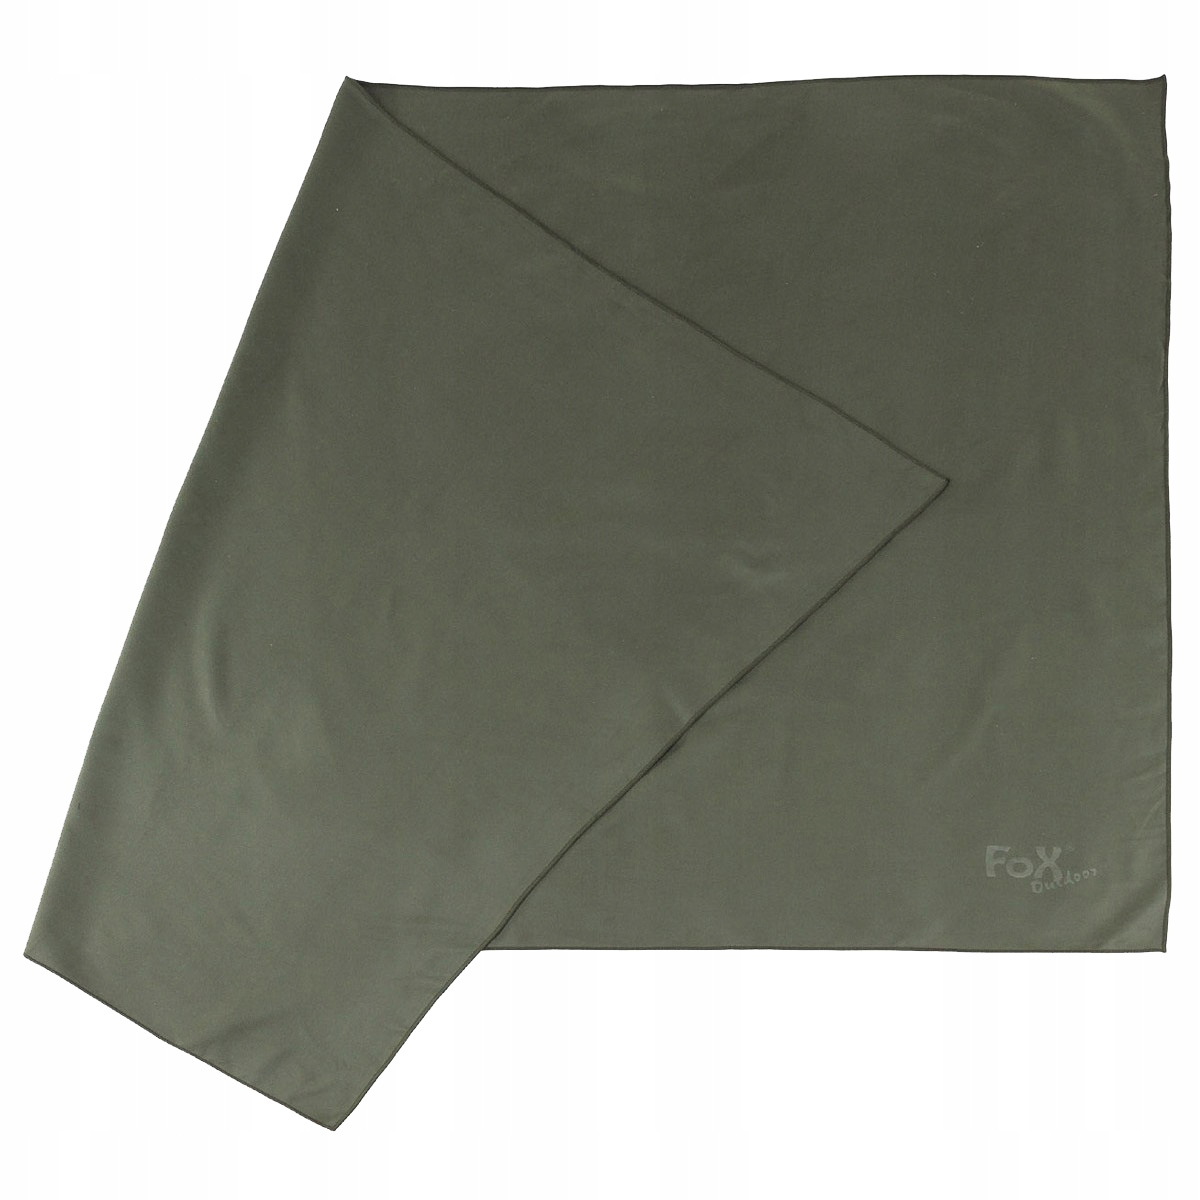 Быстрое сушильное полотенце Fox Outdoors Green 130x80 см